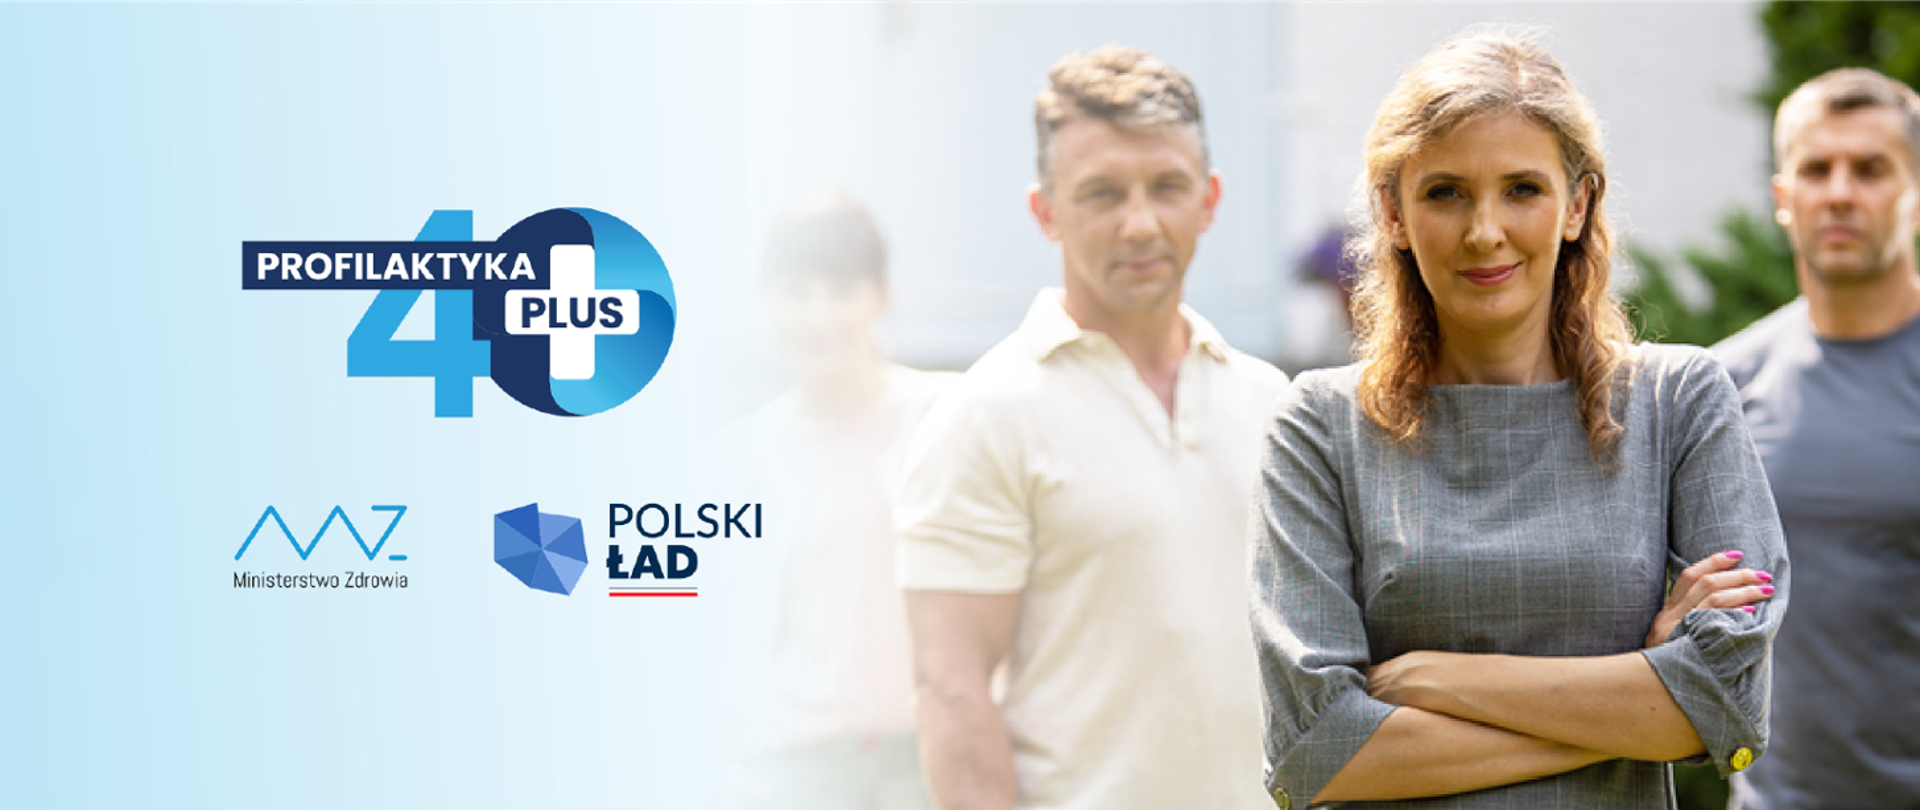 Baner do kampanii Profilaktyka 40+ realizowanej przez Ministerstwo Zdrowia. Baner ze zdjęciem kobiety i 2 mężczyzn oraz logotypem kampanii oraz Ministerstwa Zdrowia i Polskiego Ładu. 